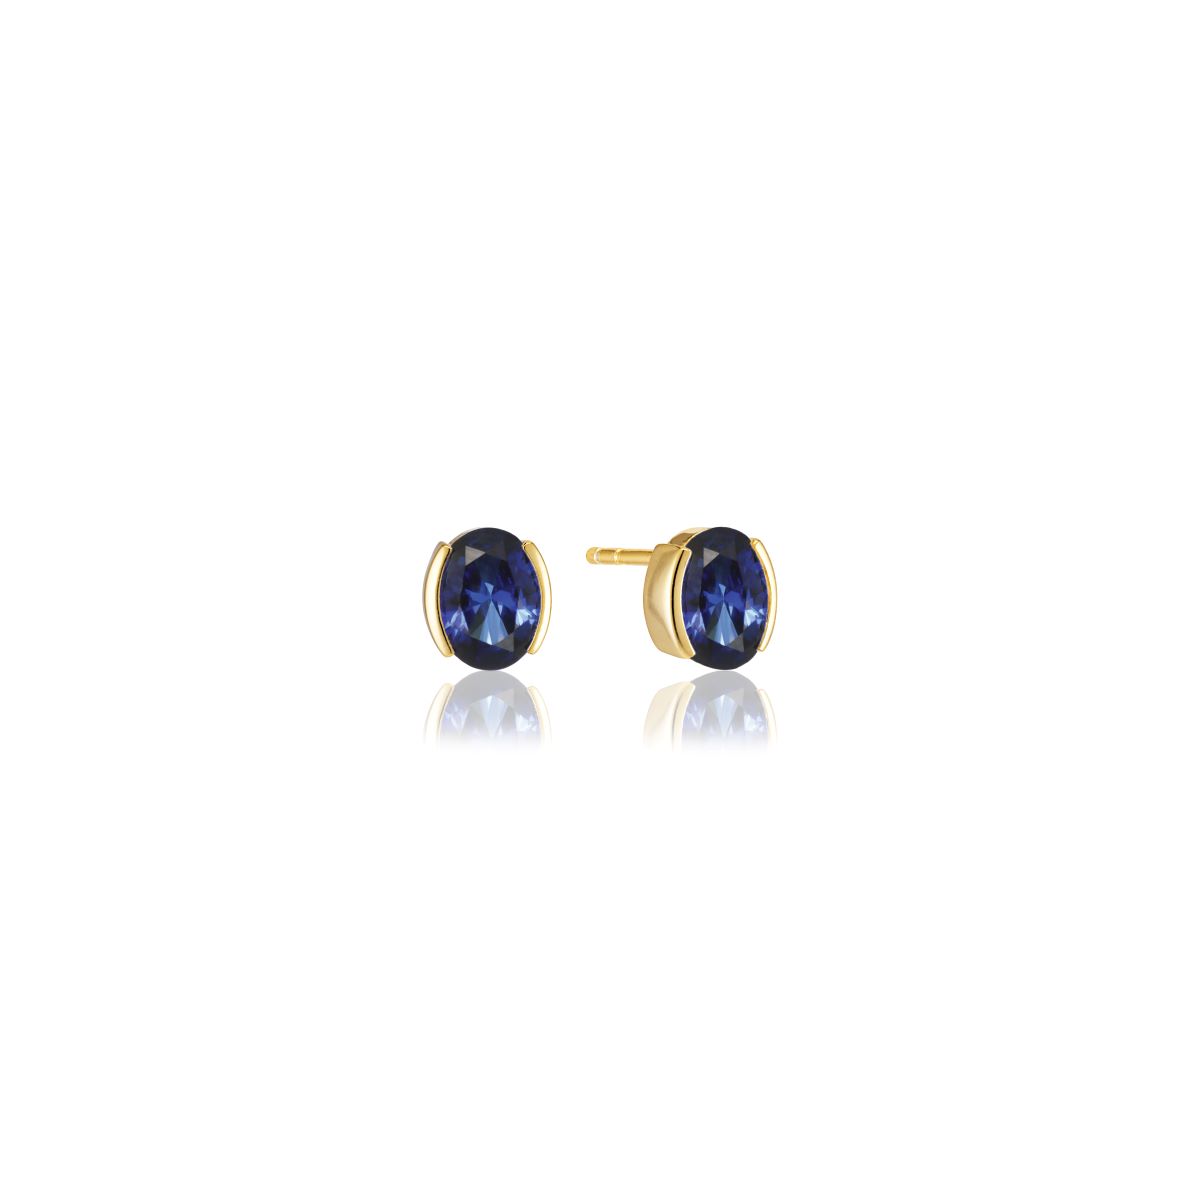 Sif Jakobs Ellisse Carezza Earrings 18k Gold Plated with Blue Zirconia - SJ-E2350-BLCZ-YG